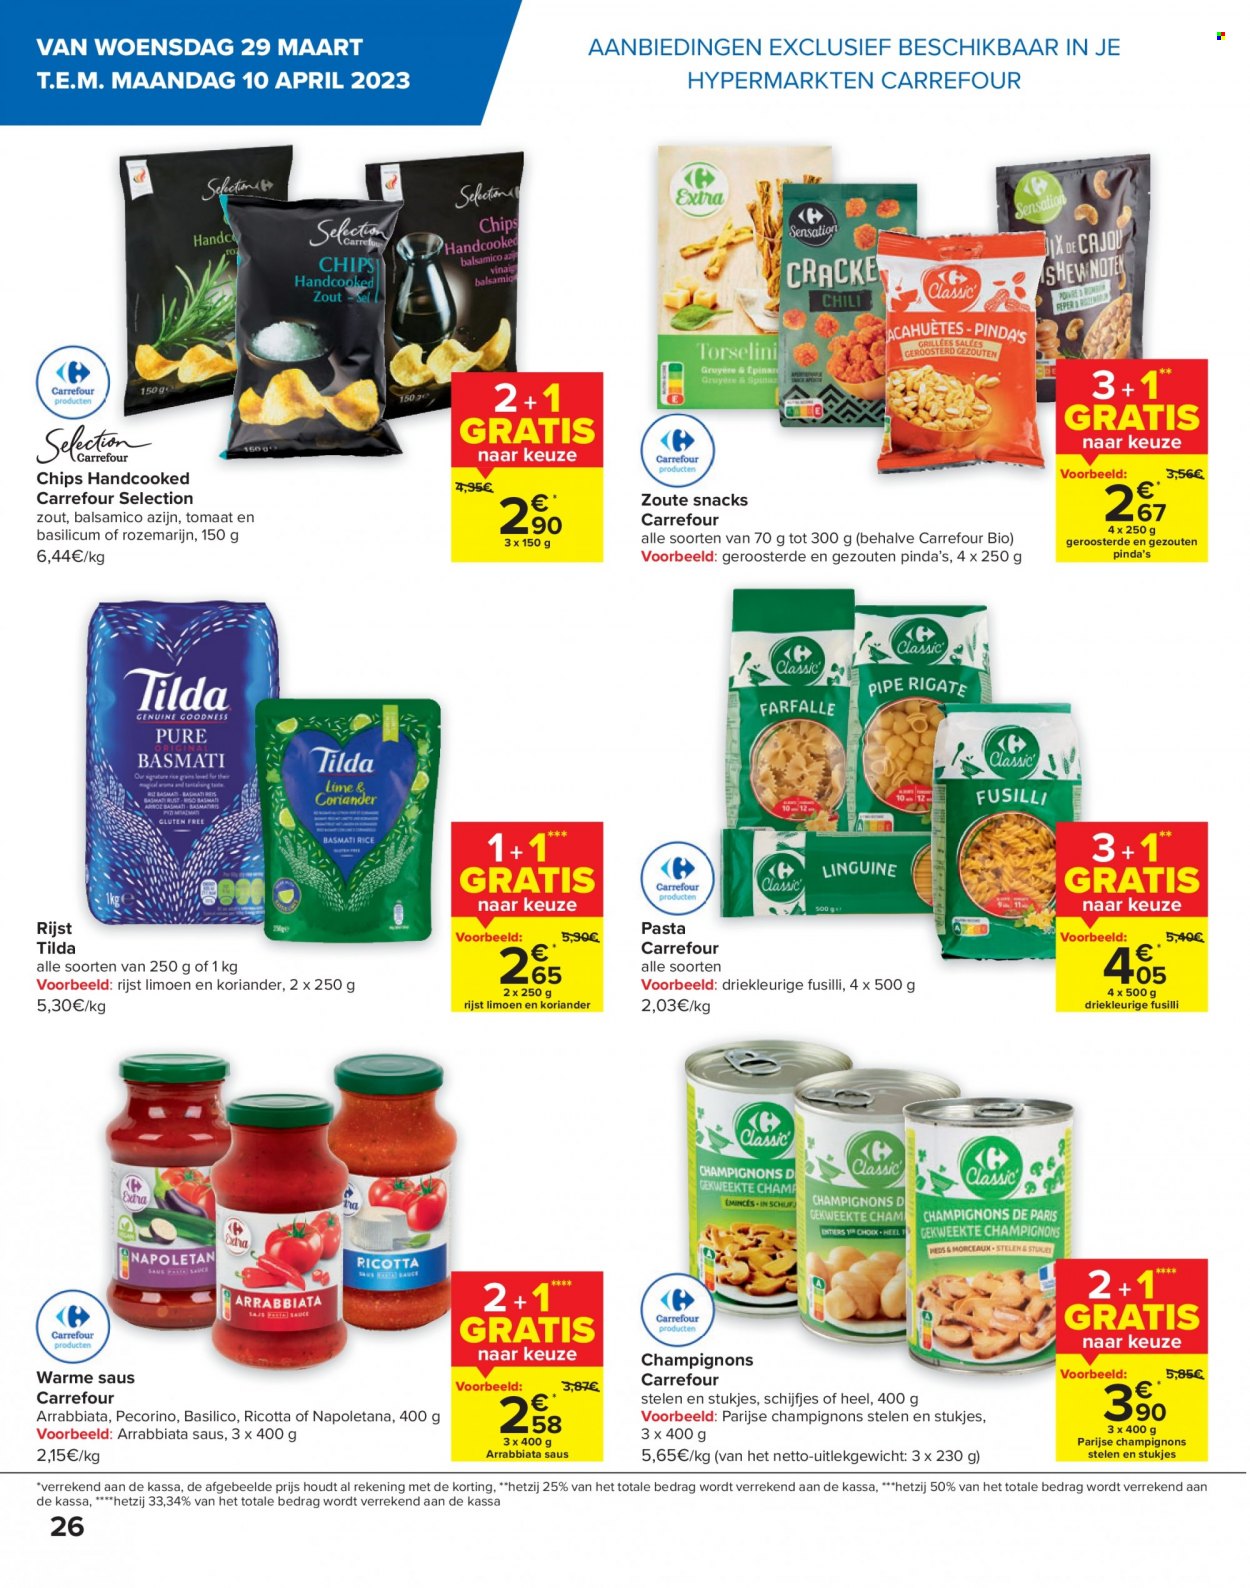 thumbnail - Catalogue Carrefour hypermarkt - 29/03/2023 - 10/04/2023 - Produits soldés - champignon, chips, ricotta. Page 26.